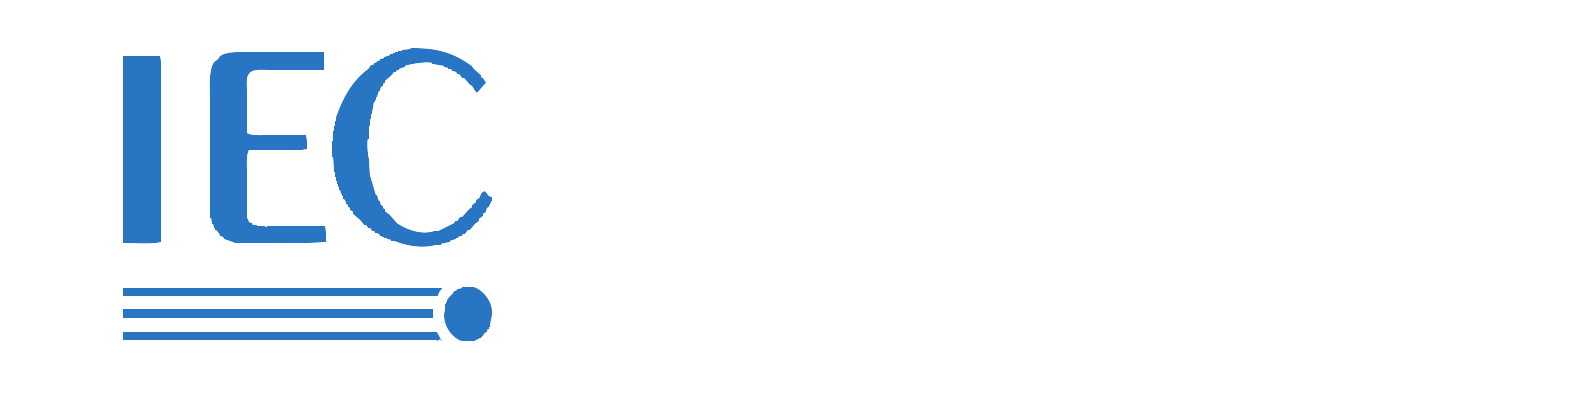 IEC 62196-2 EV Ricarica